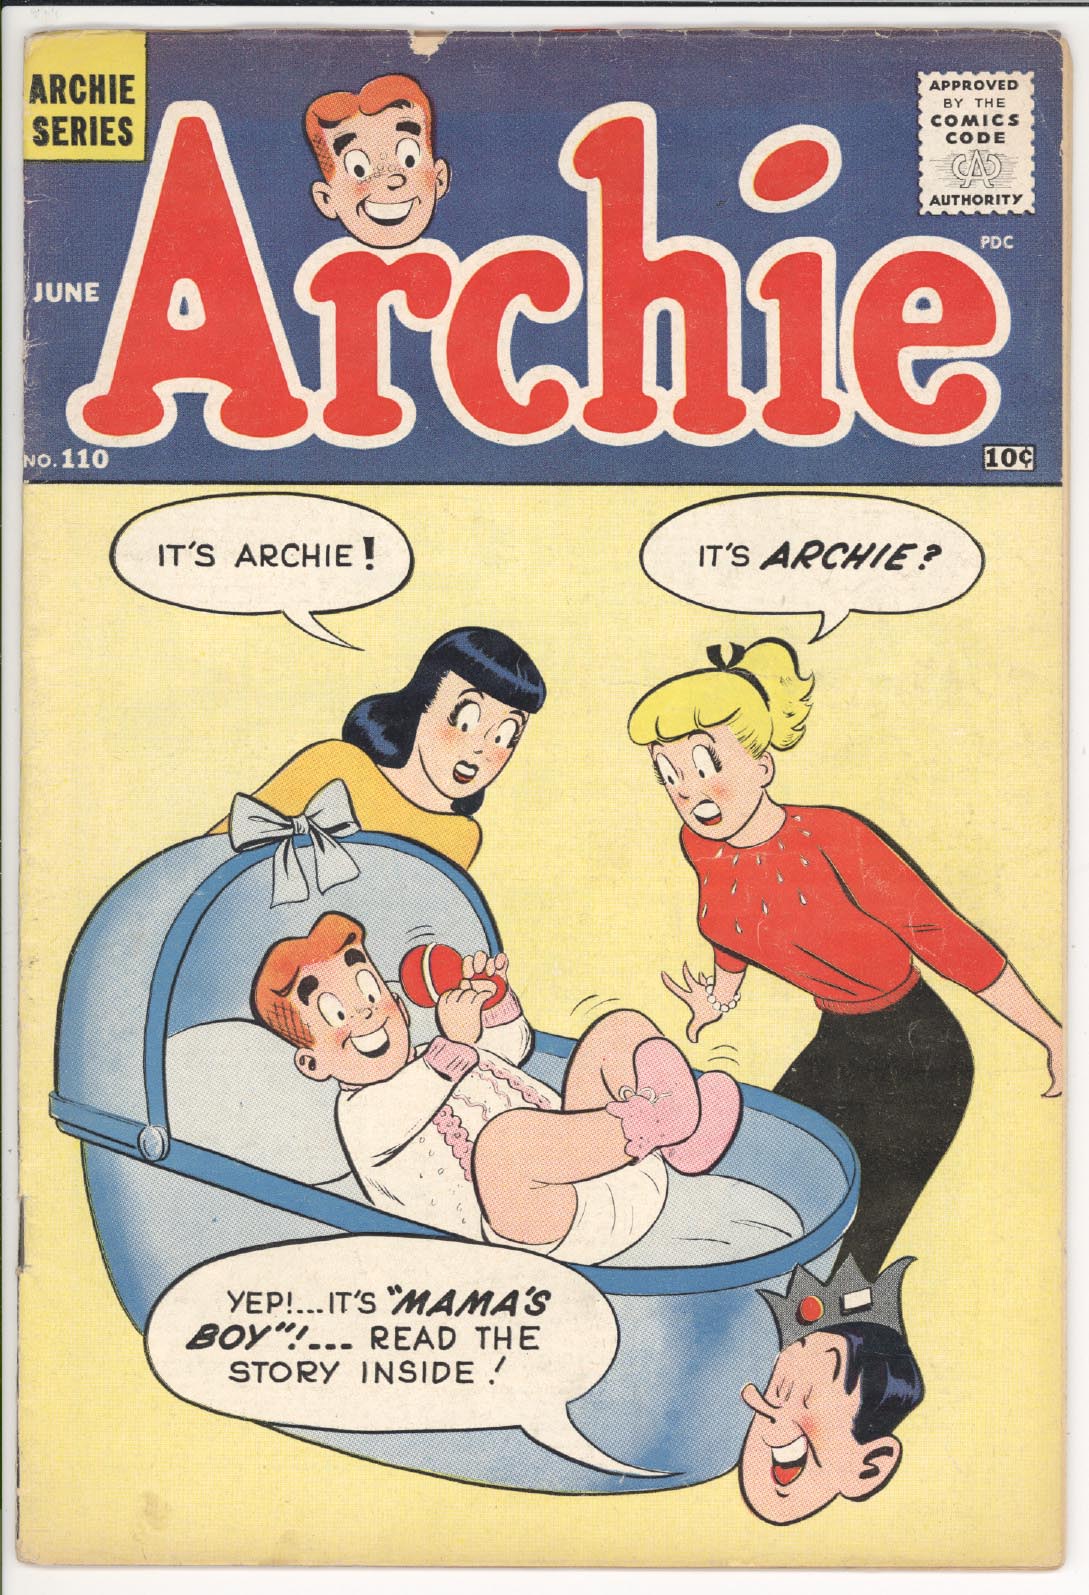 Archie comics #110 front